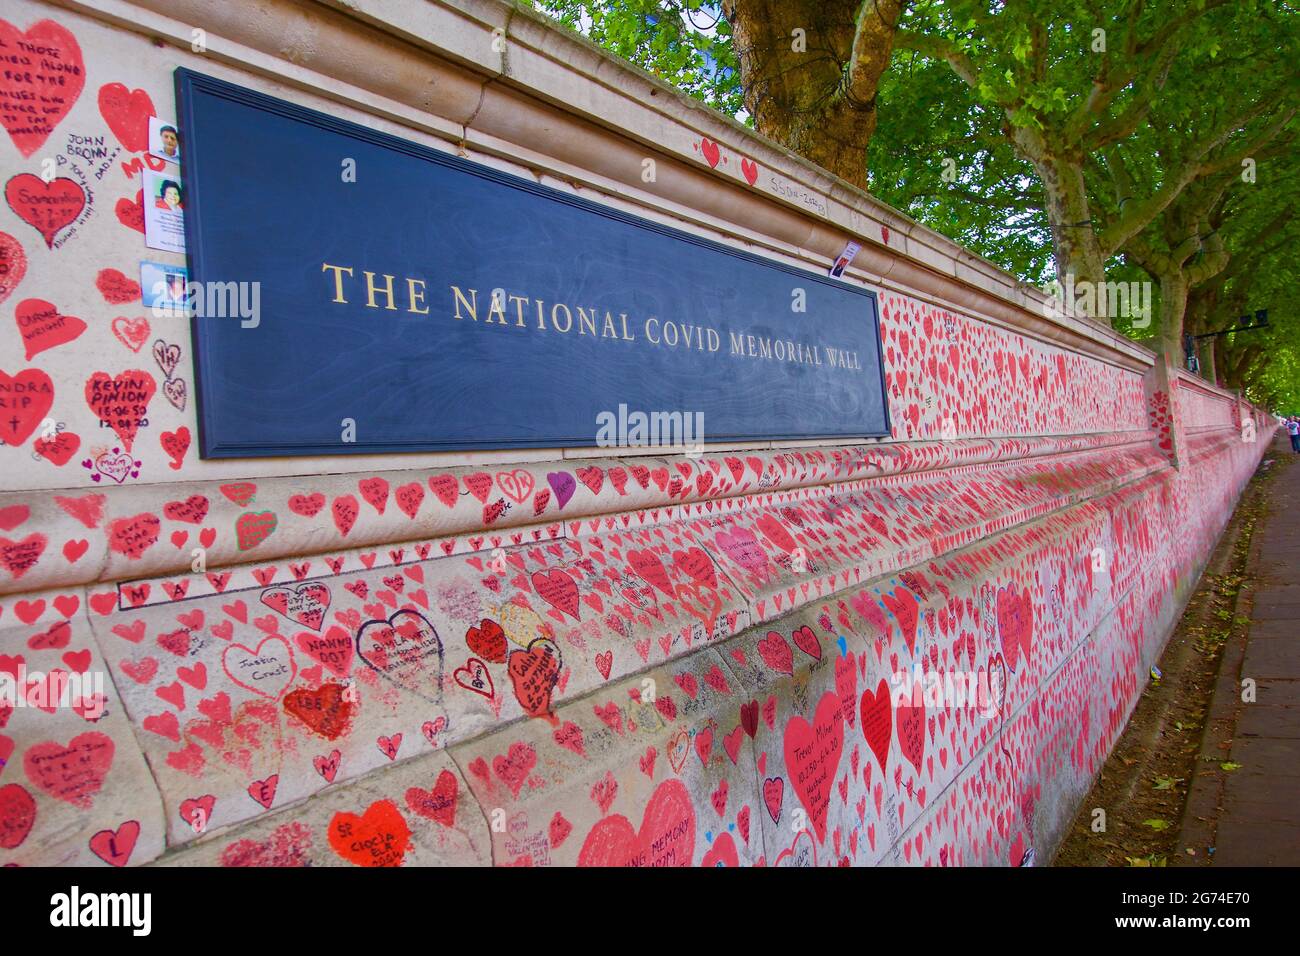 Londra, Inghilterra, Regno Unito 24.06.2021 The National Covid Memorial Wall in South Bank, Lambeth in memoria delle vittime del Covid-19 Foto Stock